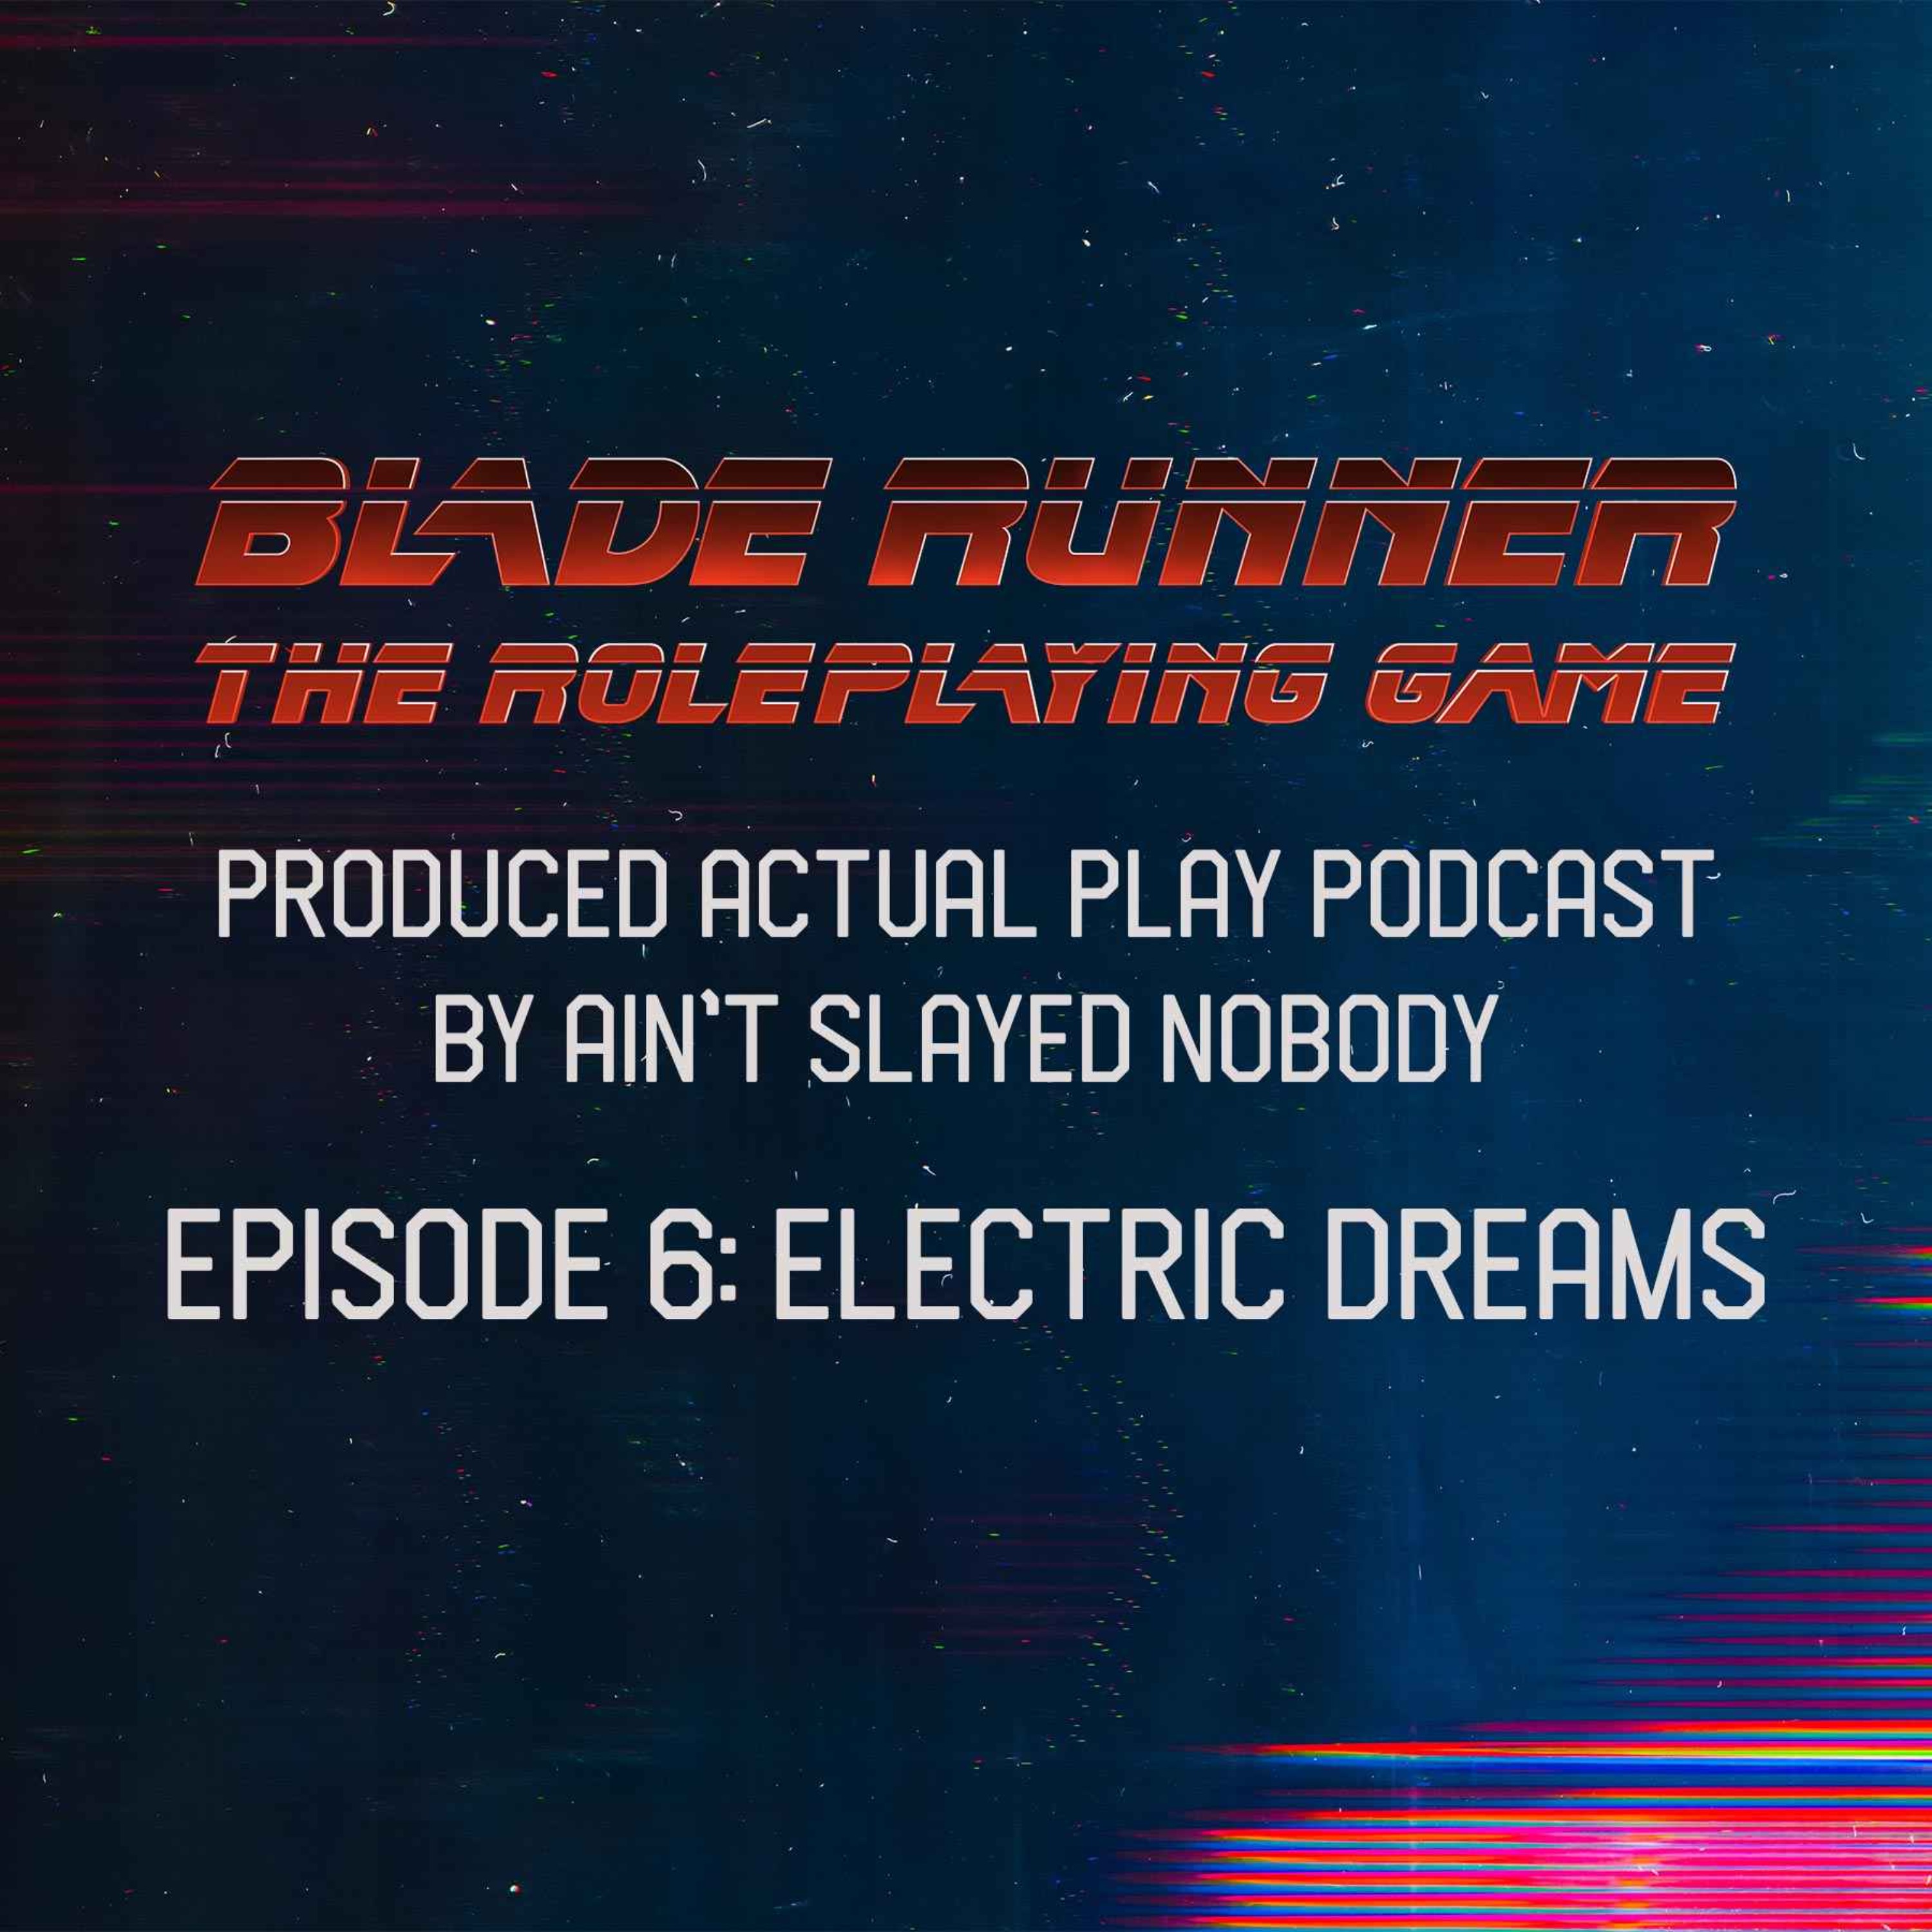 Blade Runner RPG (NP) 6/6 - Electric Dreams